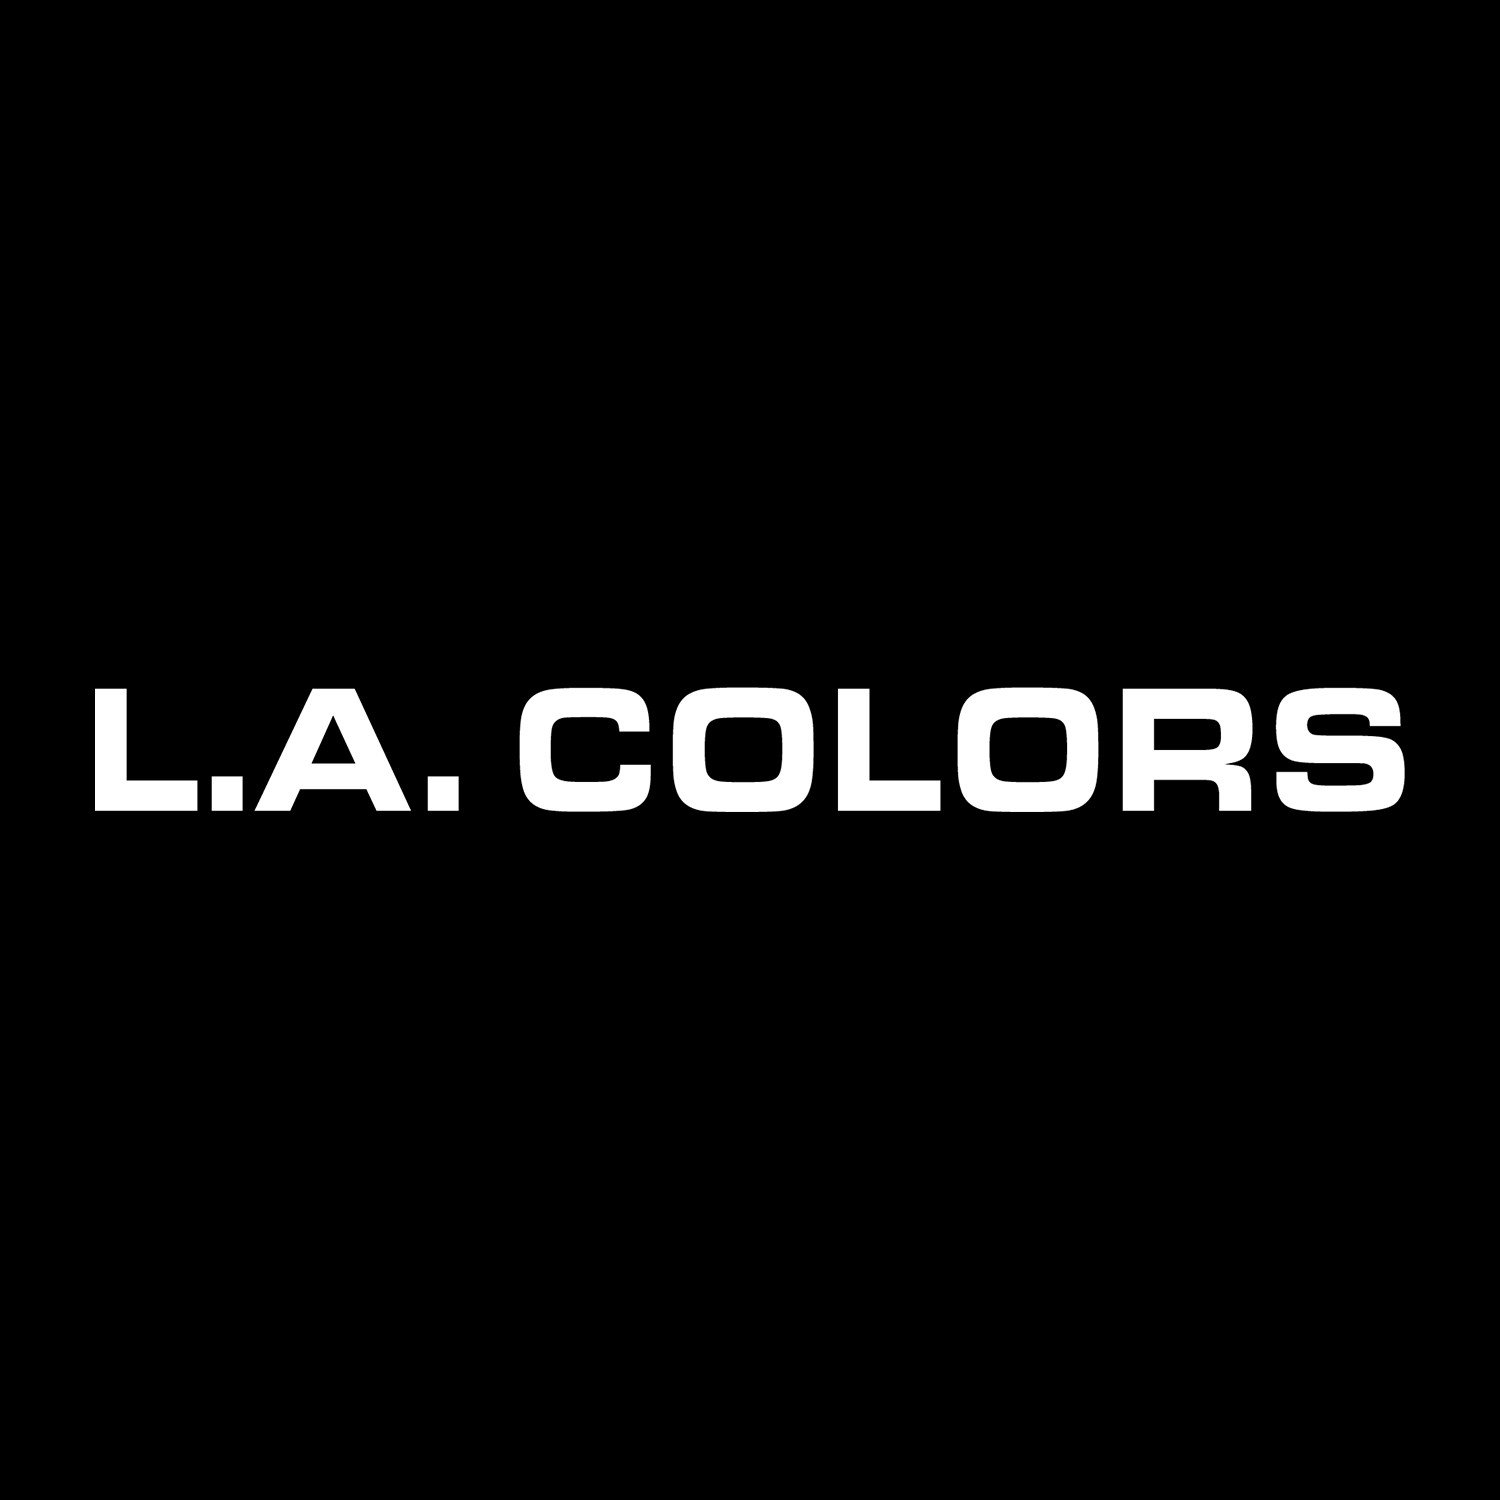 L.A. COLORS